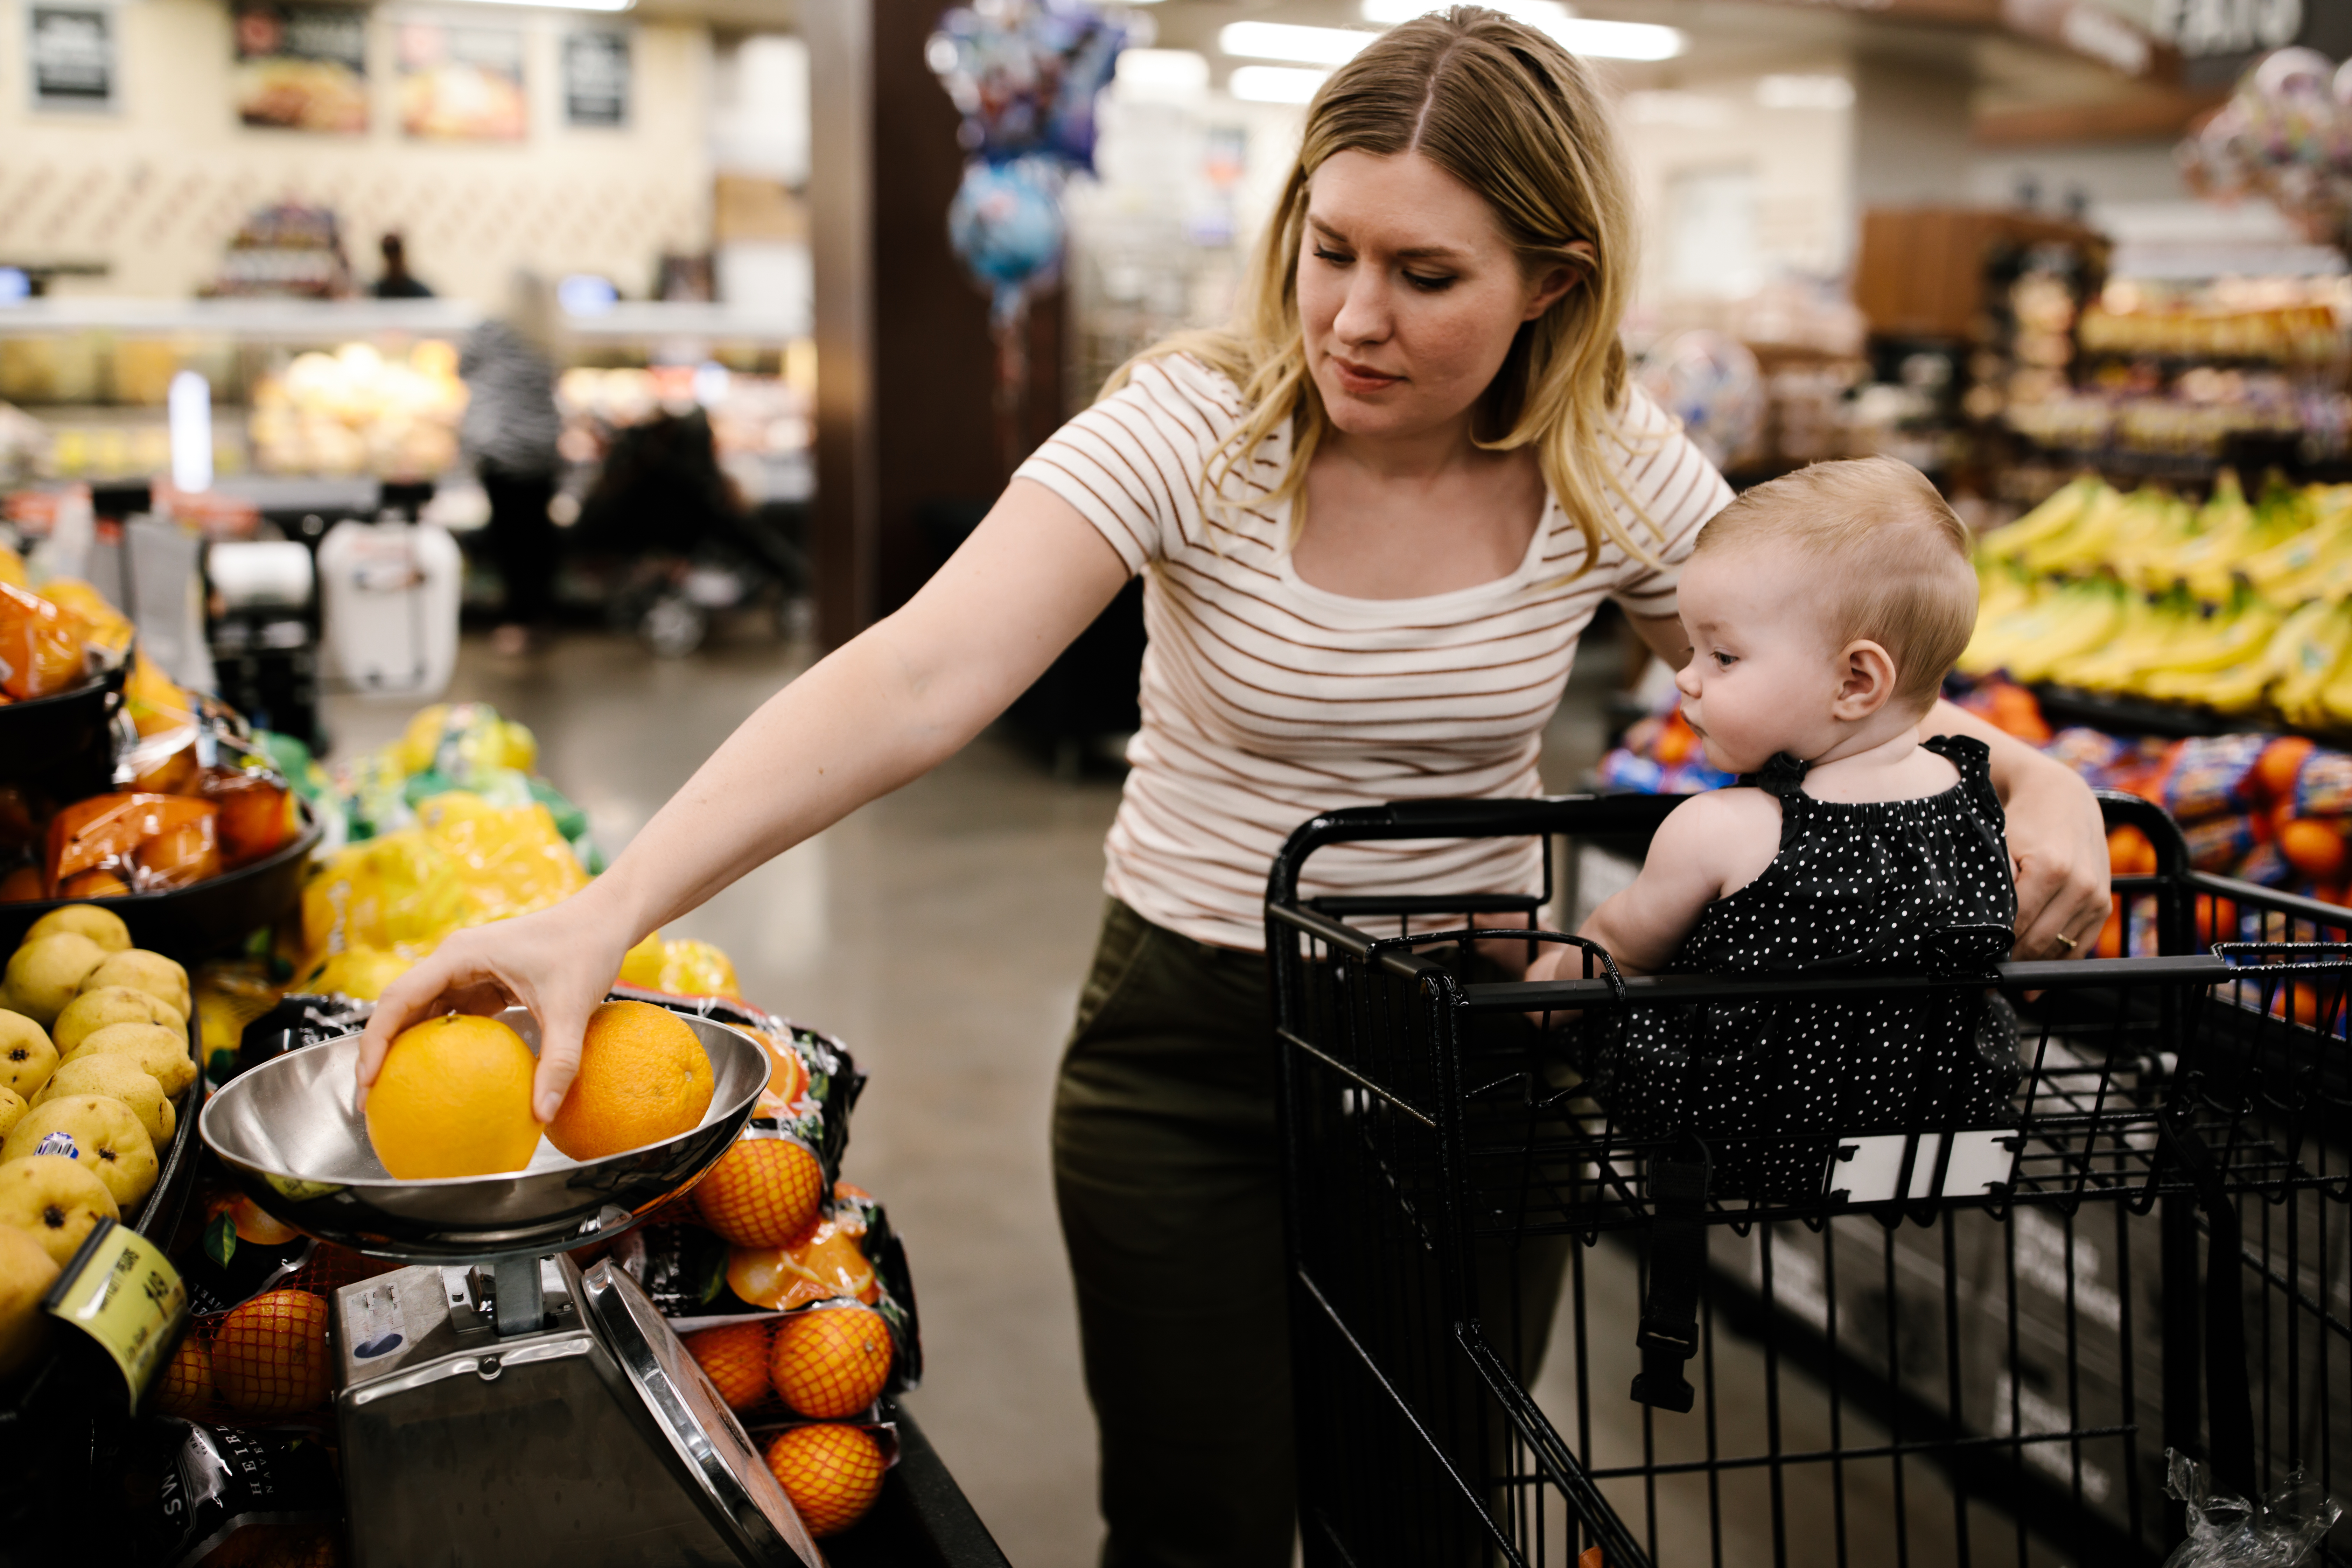 Mutter mit ihrer kleinen Tochter beim Einkaufen von frischem Obst im Supermarkt | Quelle: Getty Images